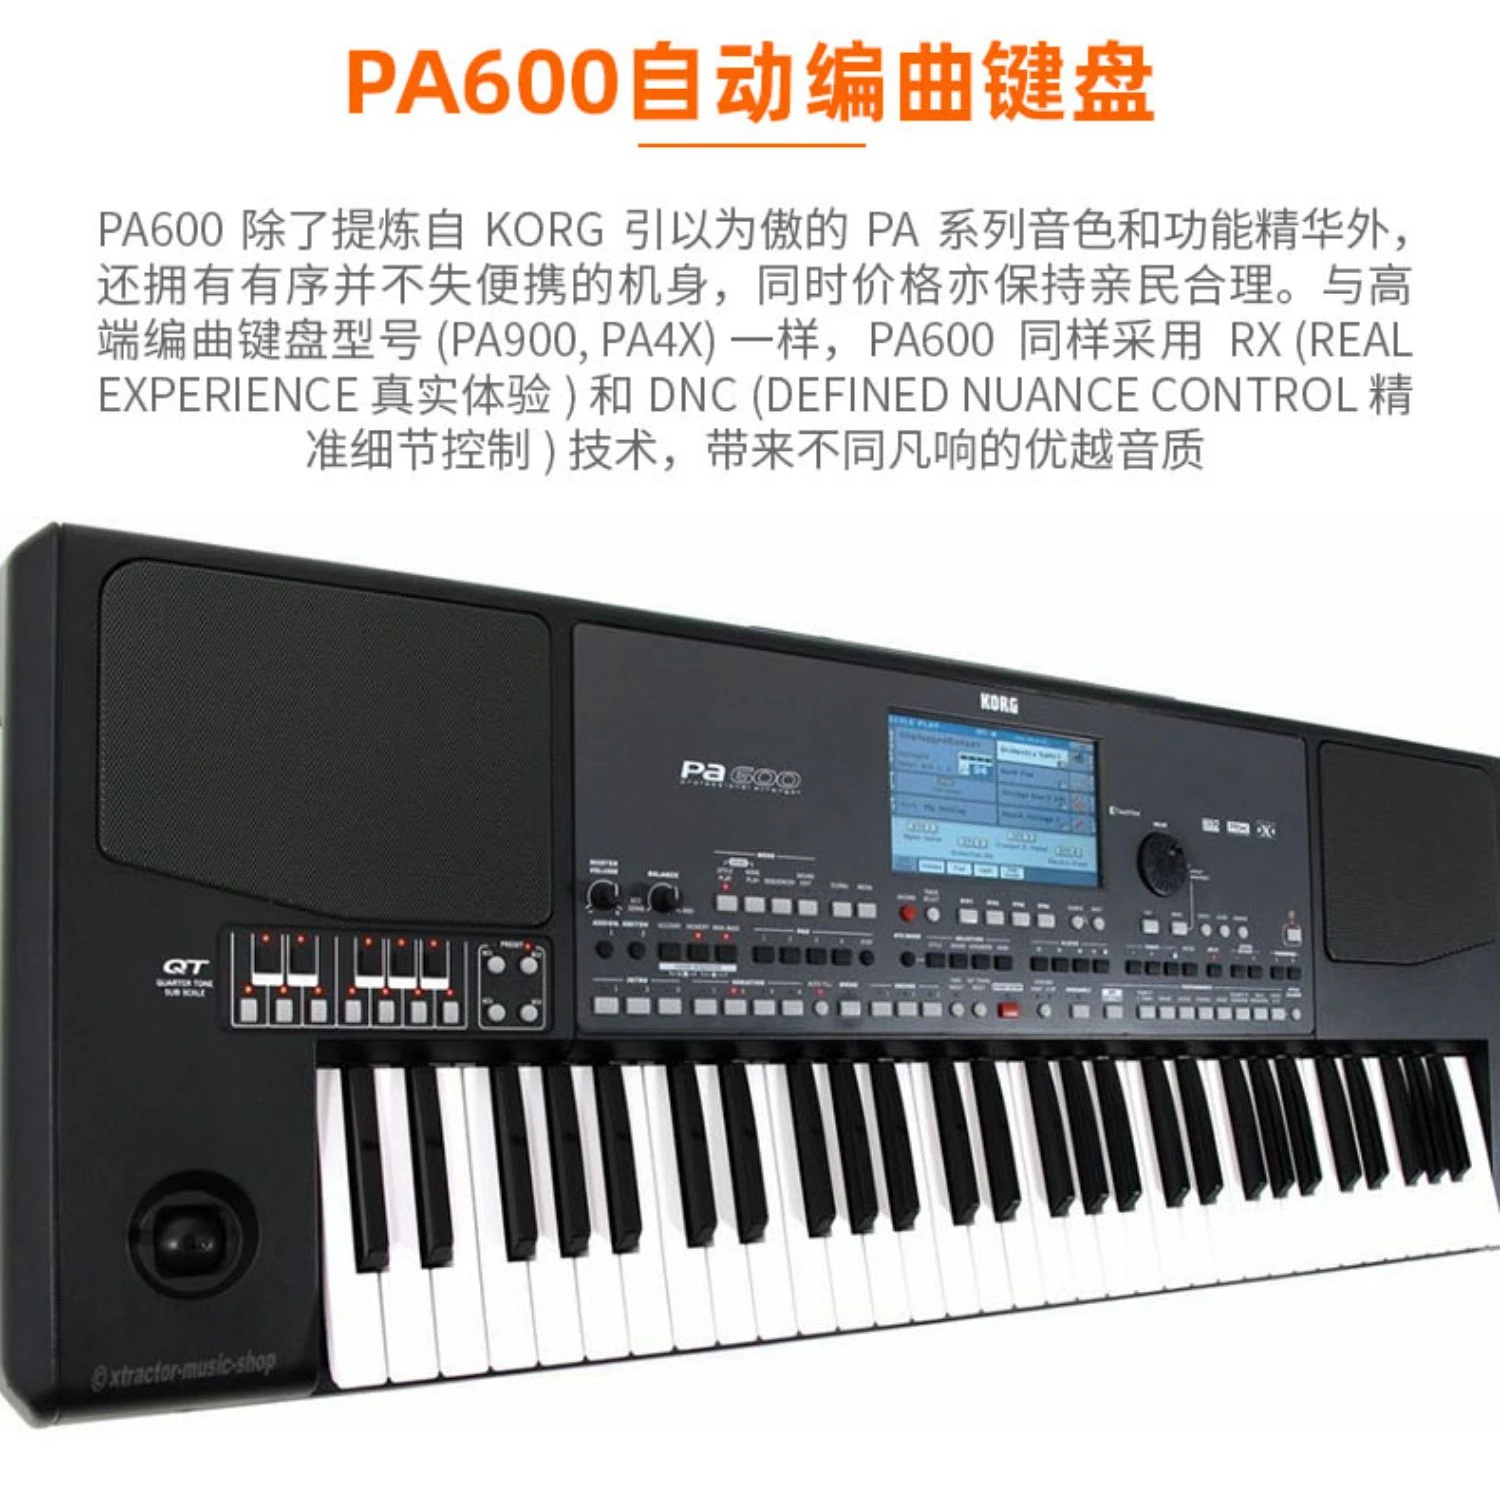 ORIGINAL NEW KORG PA 600 PA600 Key keyboard PA 600 Professional Arranger Piano